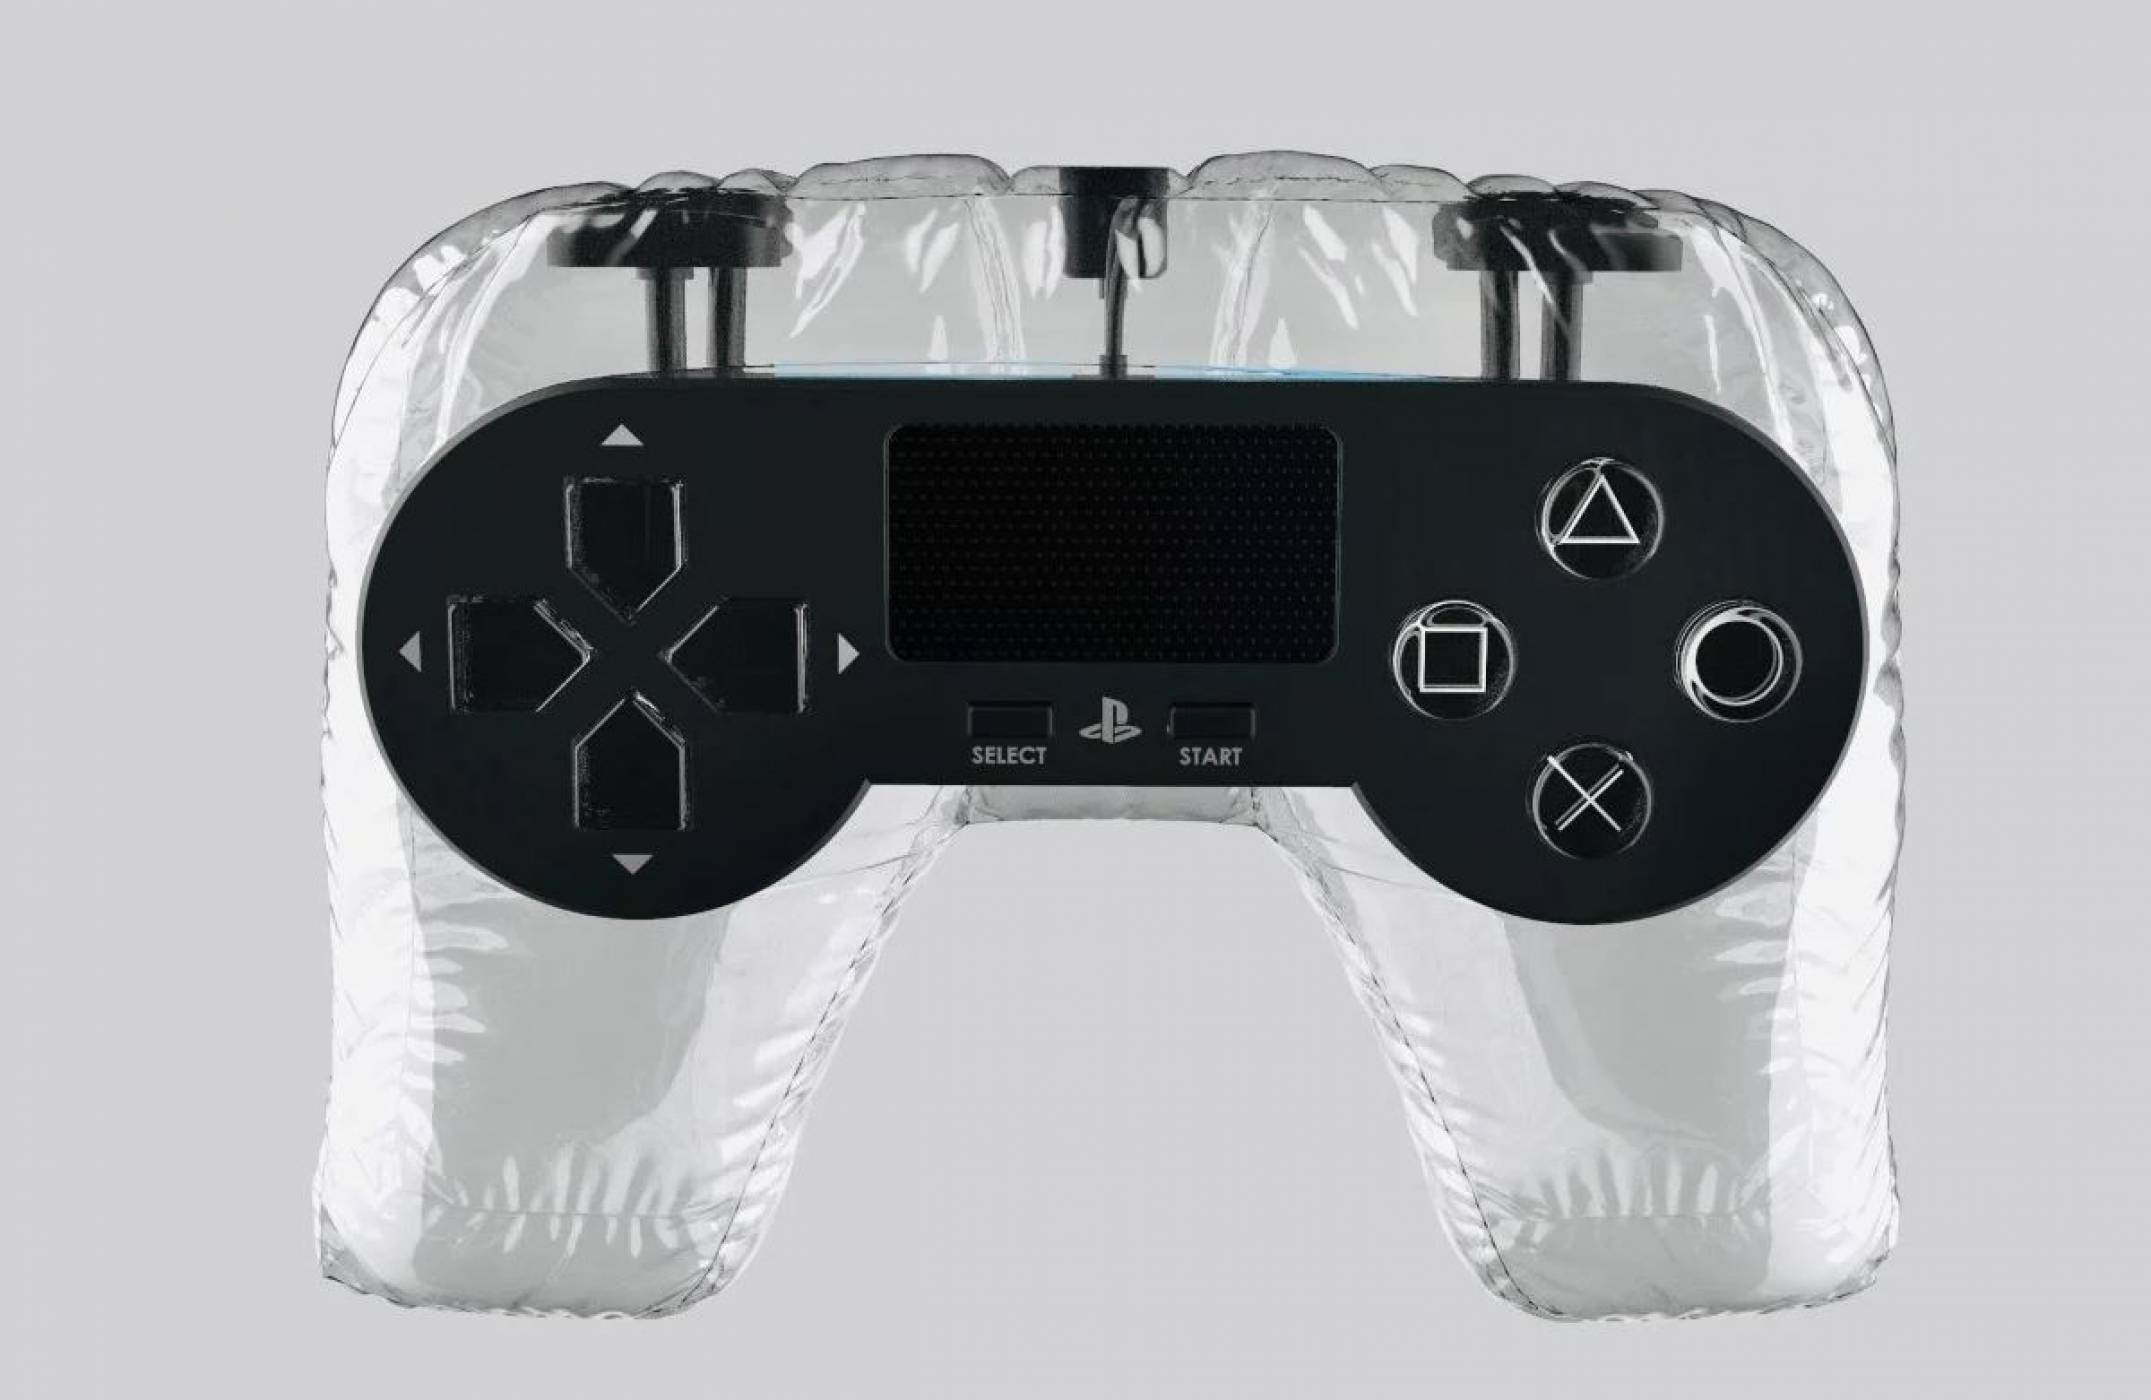 Този надуваем контролер за PlayStation е като сбъдната луда мечта